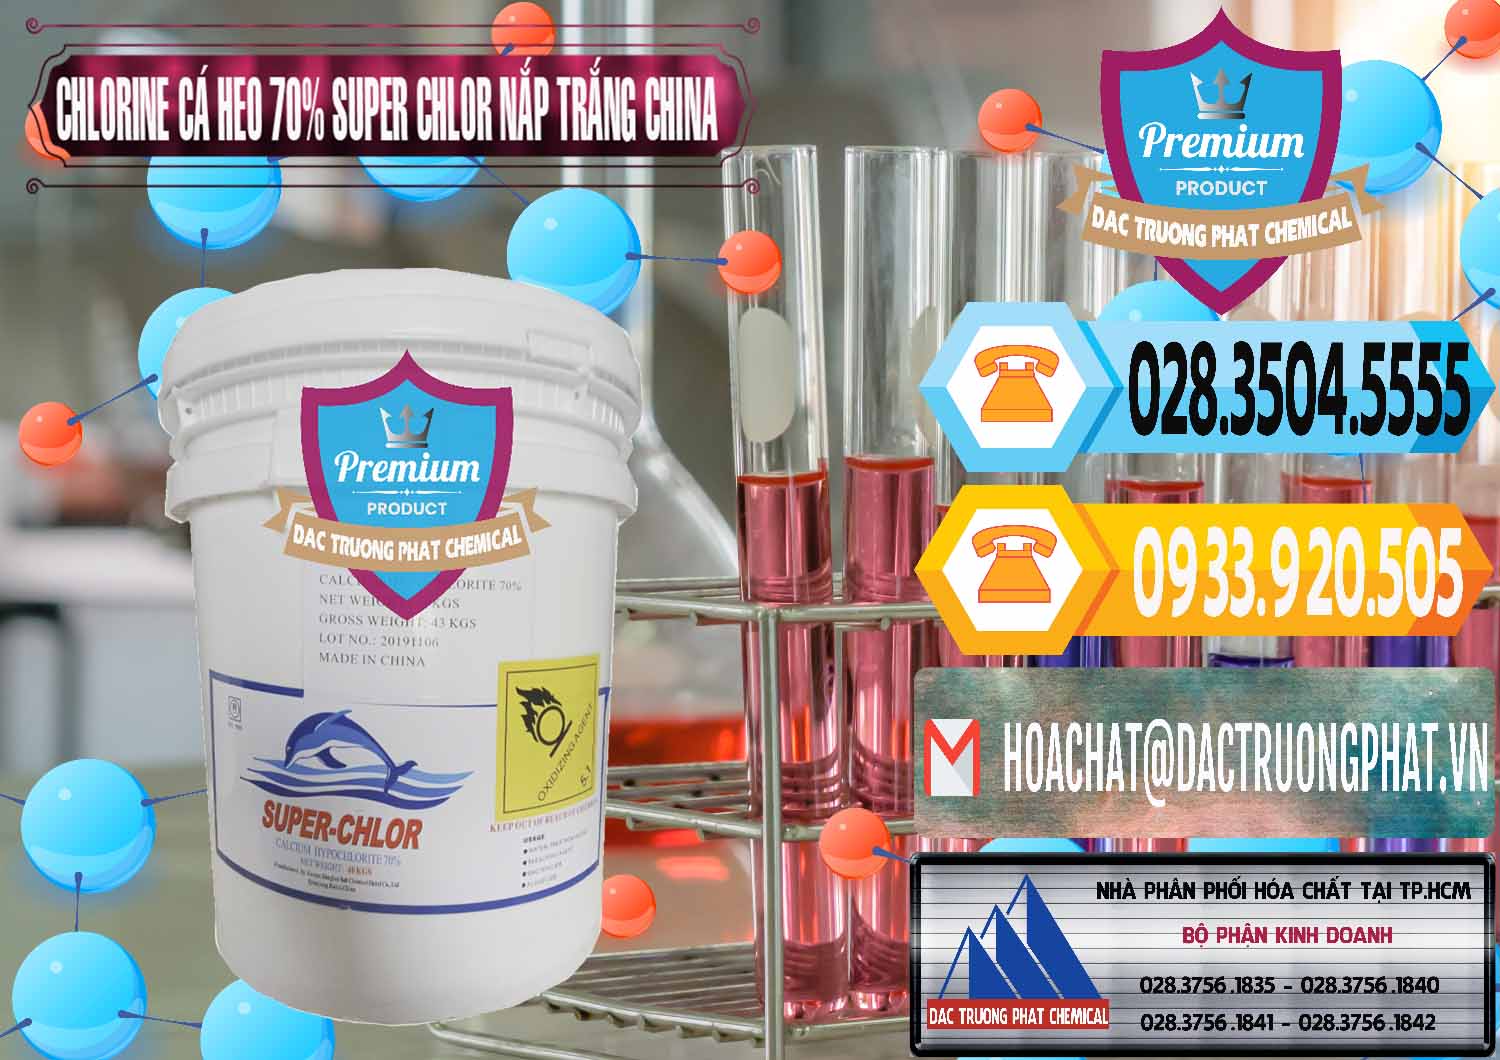 Chuyên phân phối và bán Clorin - Chlorine Cá Heo 70% Super Chlor Nắp Trắng Trung Quốc China - 0240 - Cty cung cấp và phân phối hóa chất tại TP.HCM - hoachattayrua.net